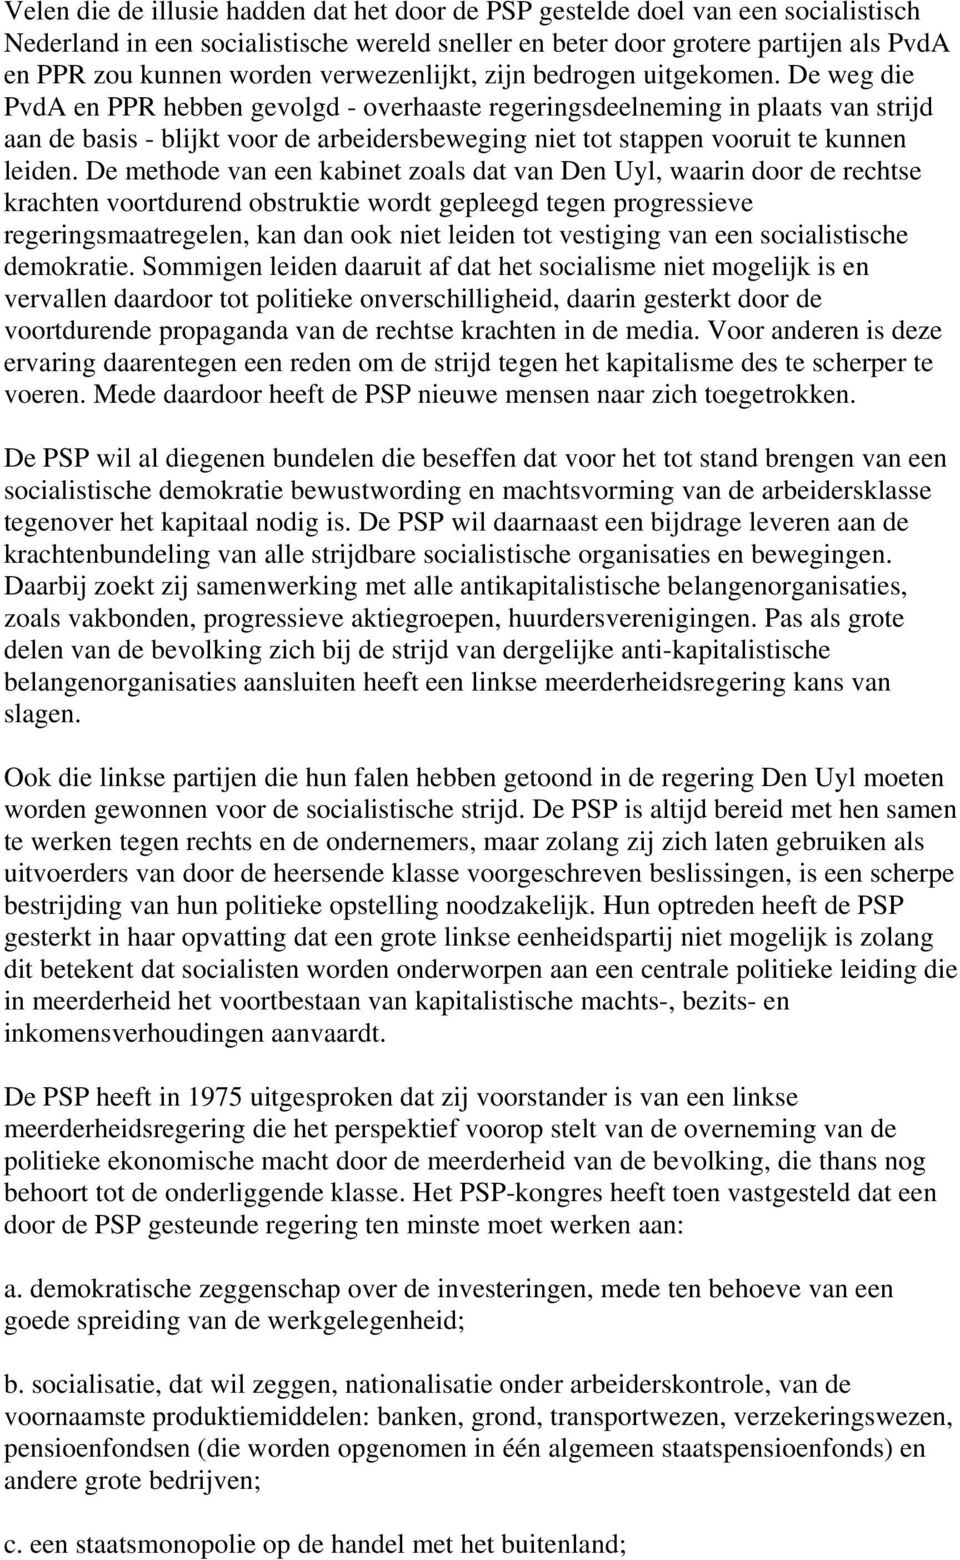 De weg die PvdA en PPR hebben gevolgd - overhaaste regeringsdeelneming in plaats van strijd aan de basis - blijkt voor de arbeidersbeweging niet tot stappen vooruit te kunnen leiden.